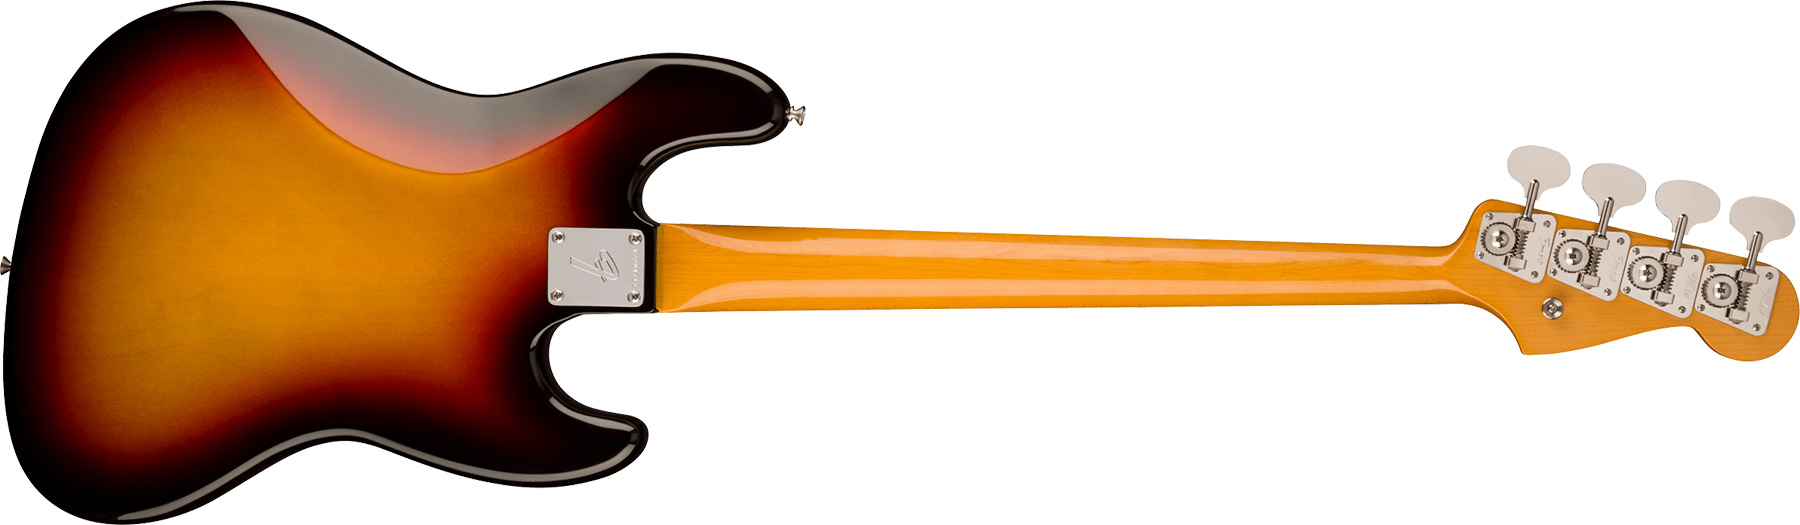 Fender Jazz Bass 1966 American Vintage Ii Lh Gaucher Usa Rw - 3-color Sunburst - Solid body elektrische bas - Variation 1